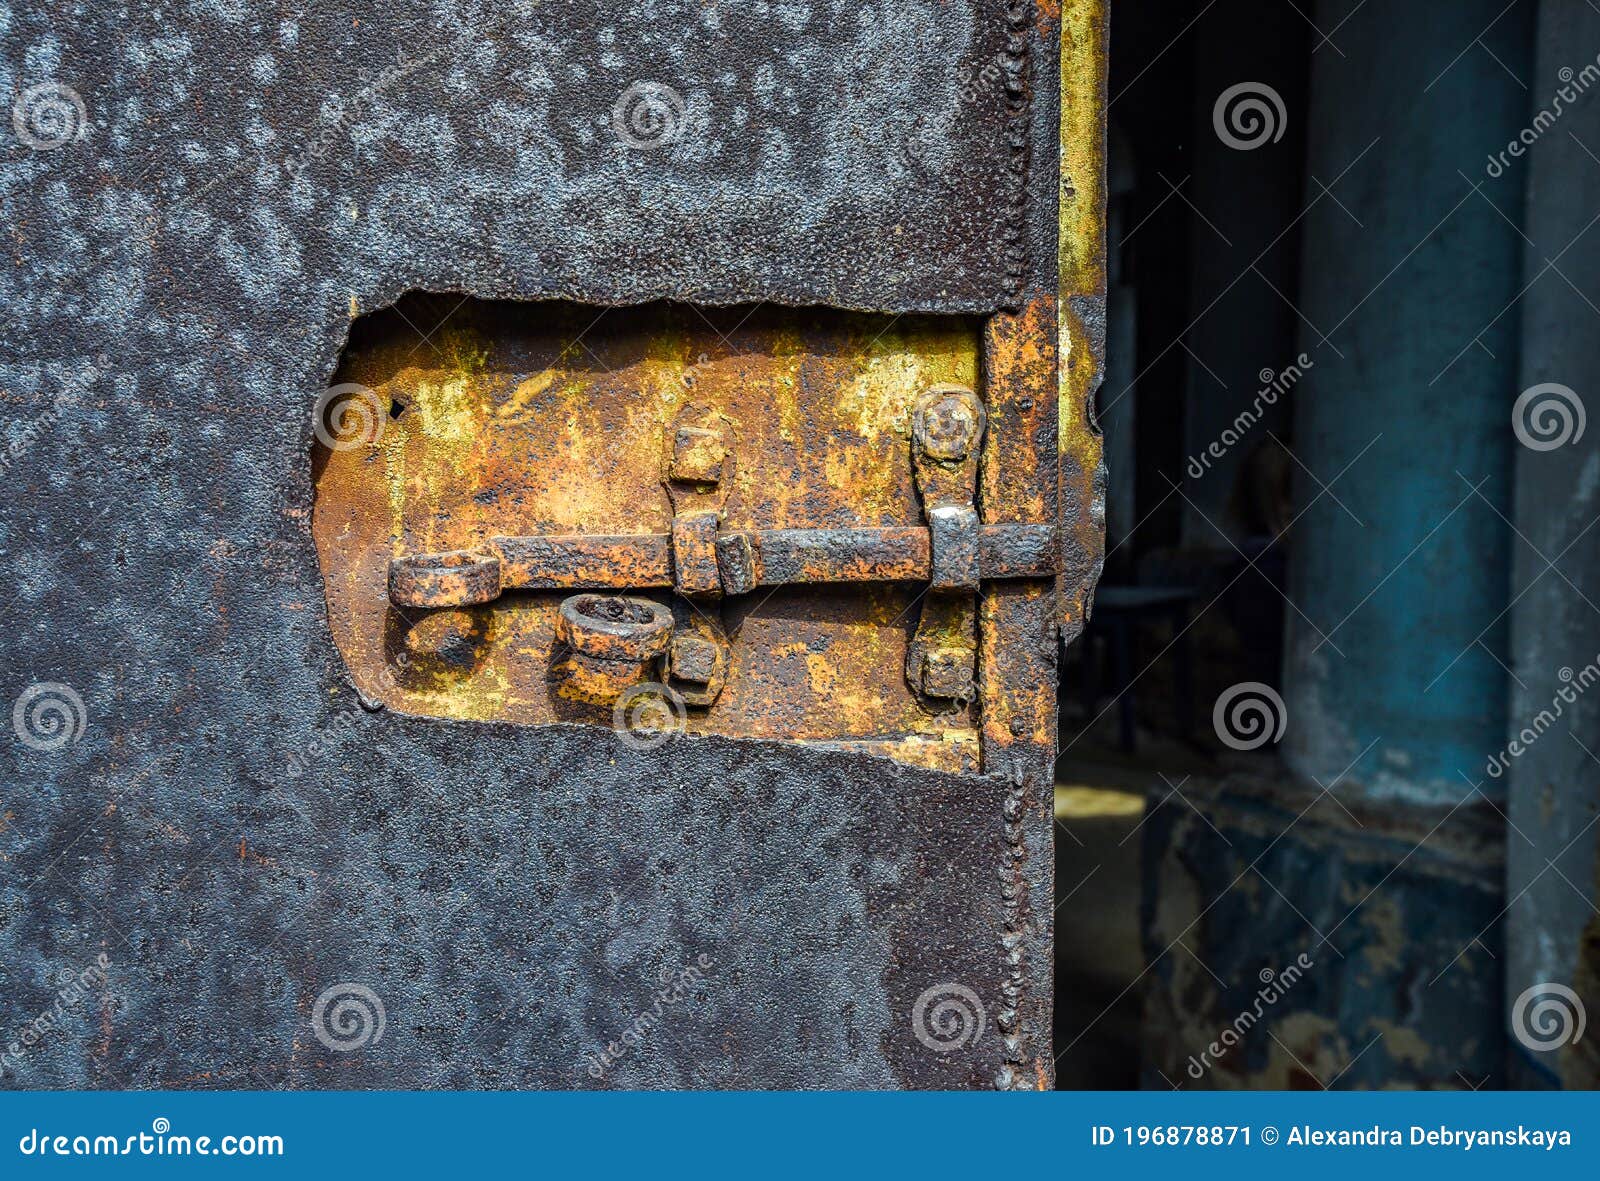 old door, rusty lock on church